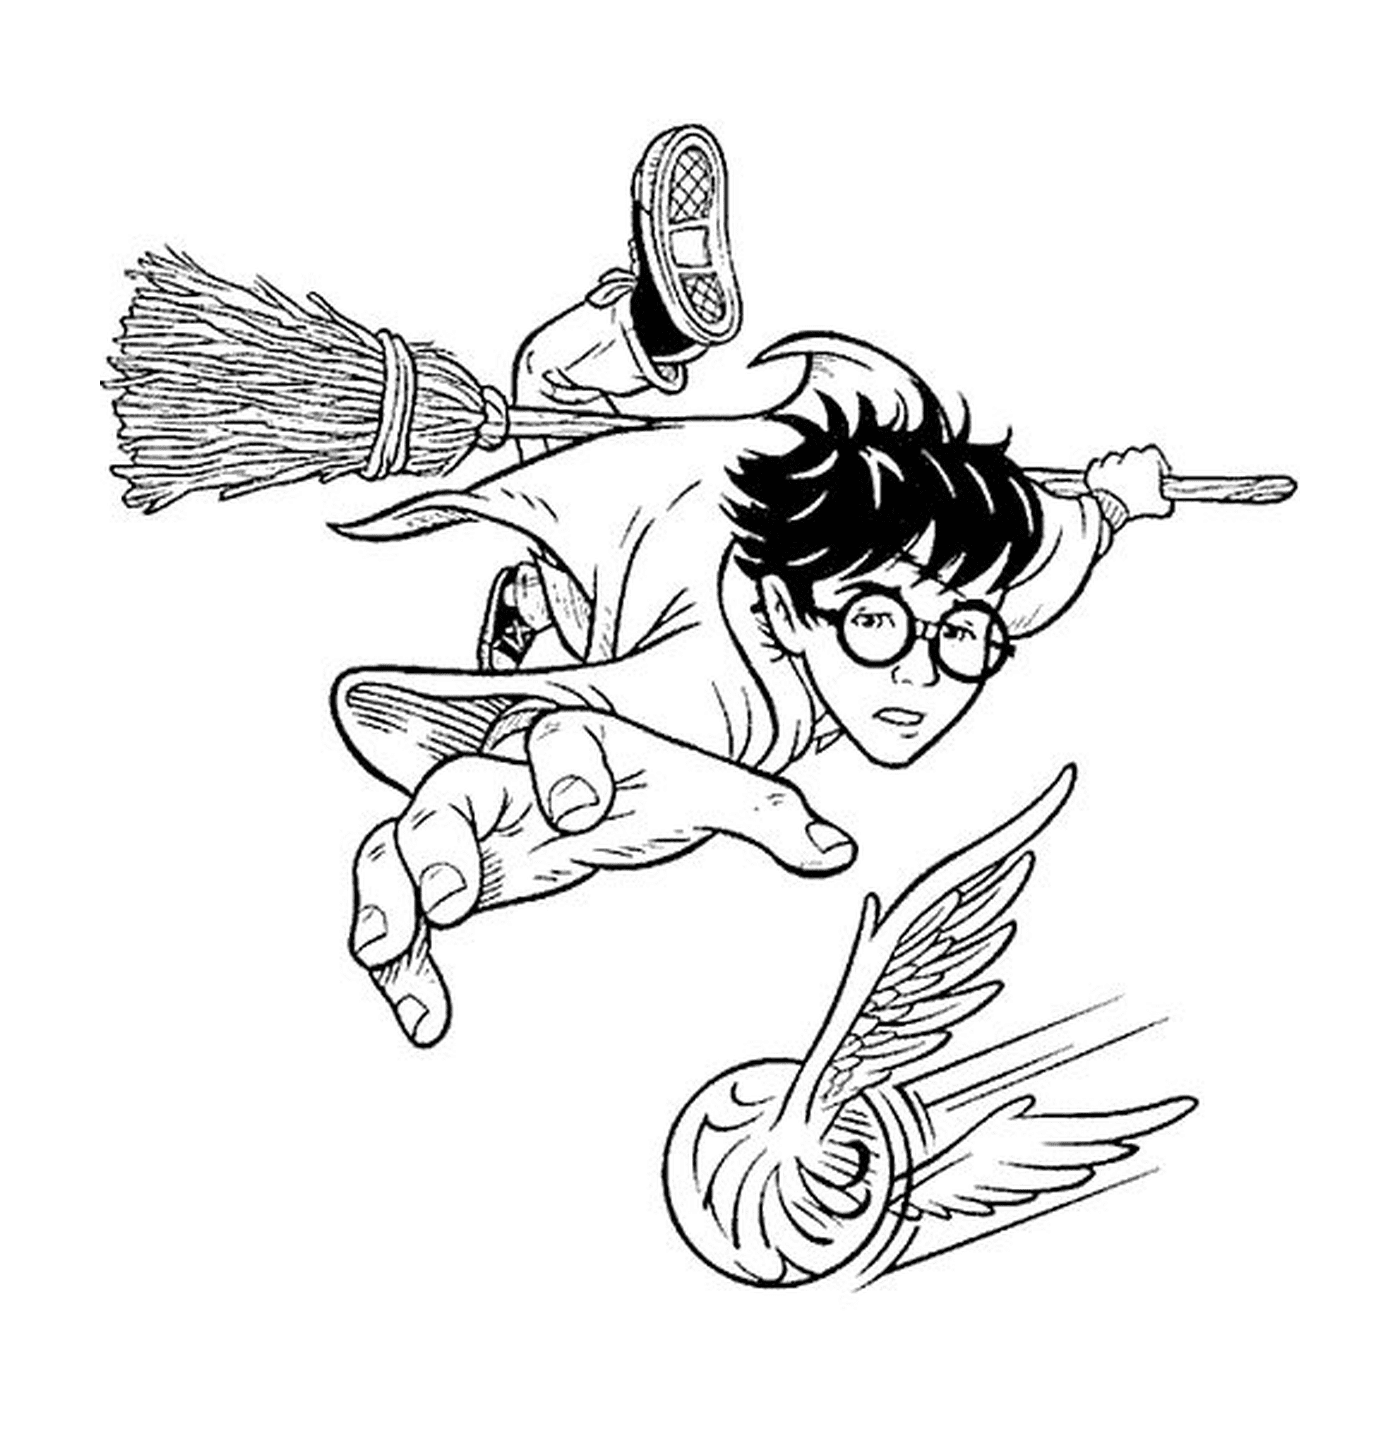   Quidditch Harry, vol sur balai 